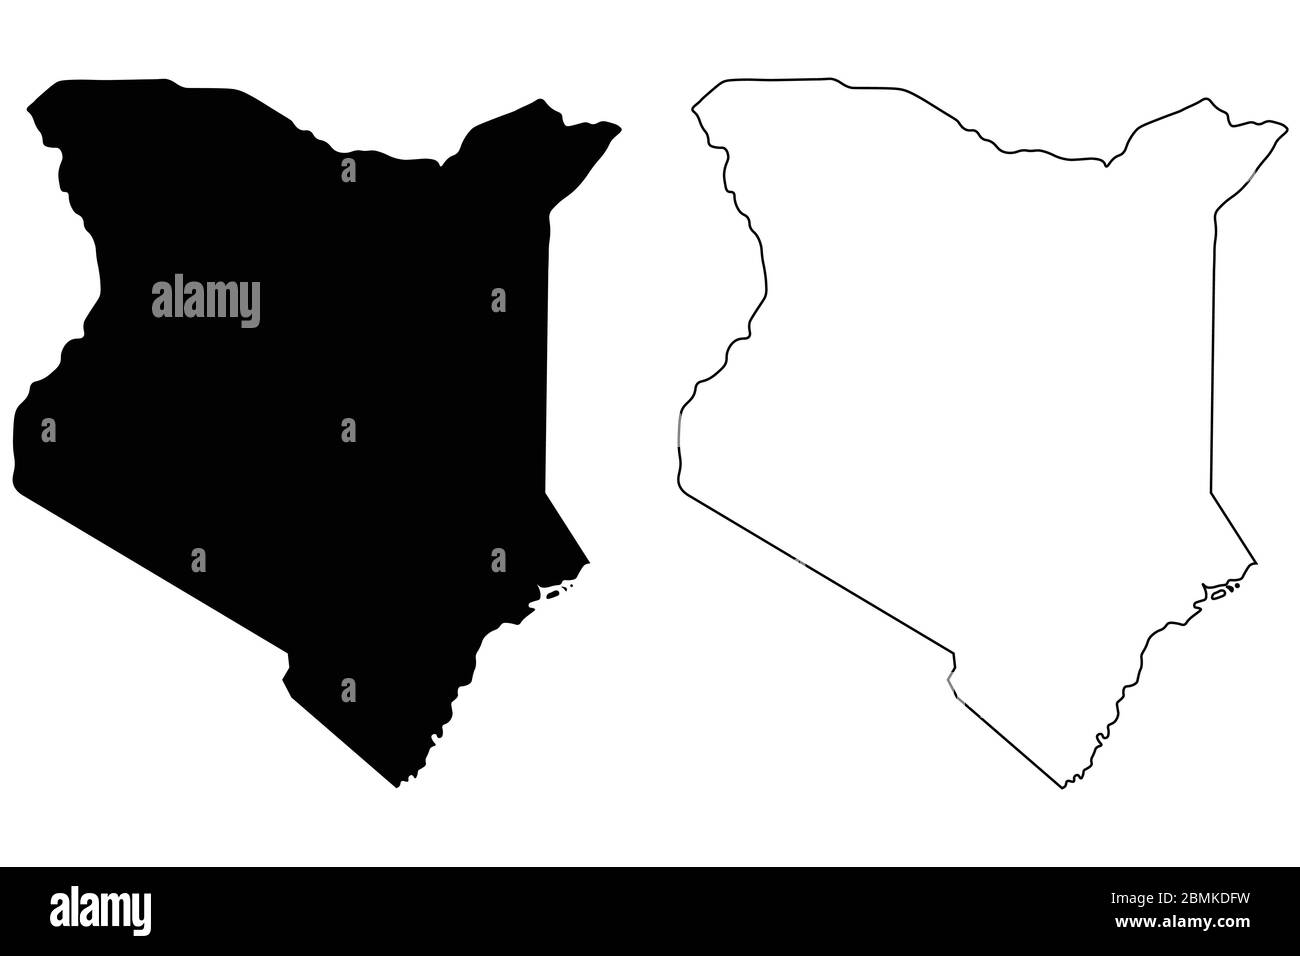 Länderkarte Kenia. Schwarze Silhouette und Umriss isoliert auf weißem Hintergrund. EPS-Vektor Stock Vektor